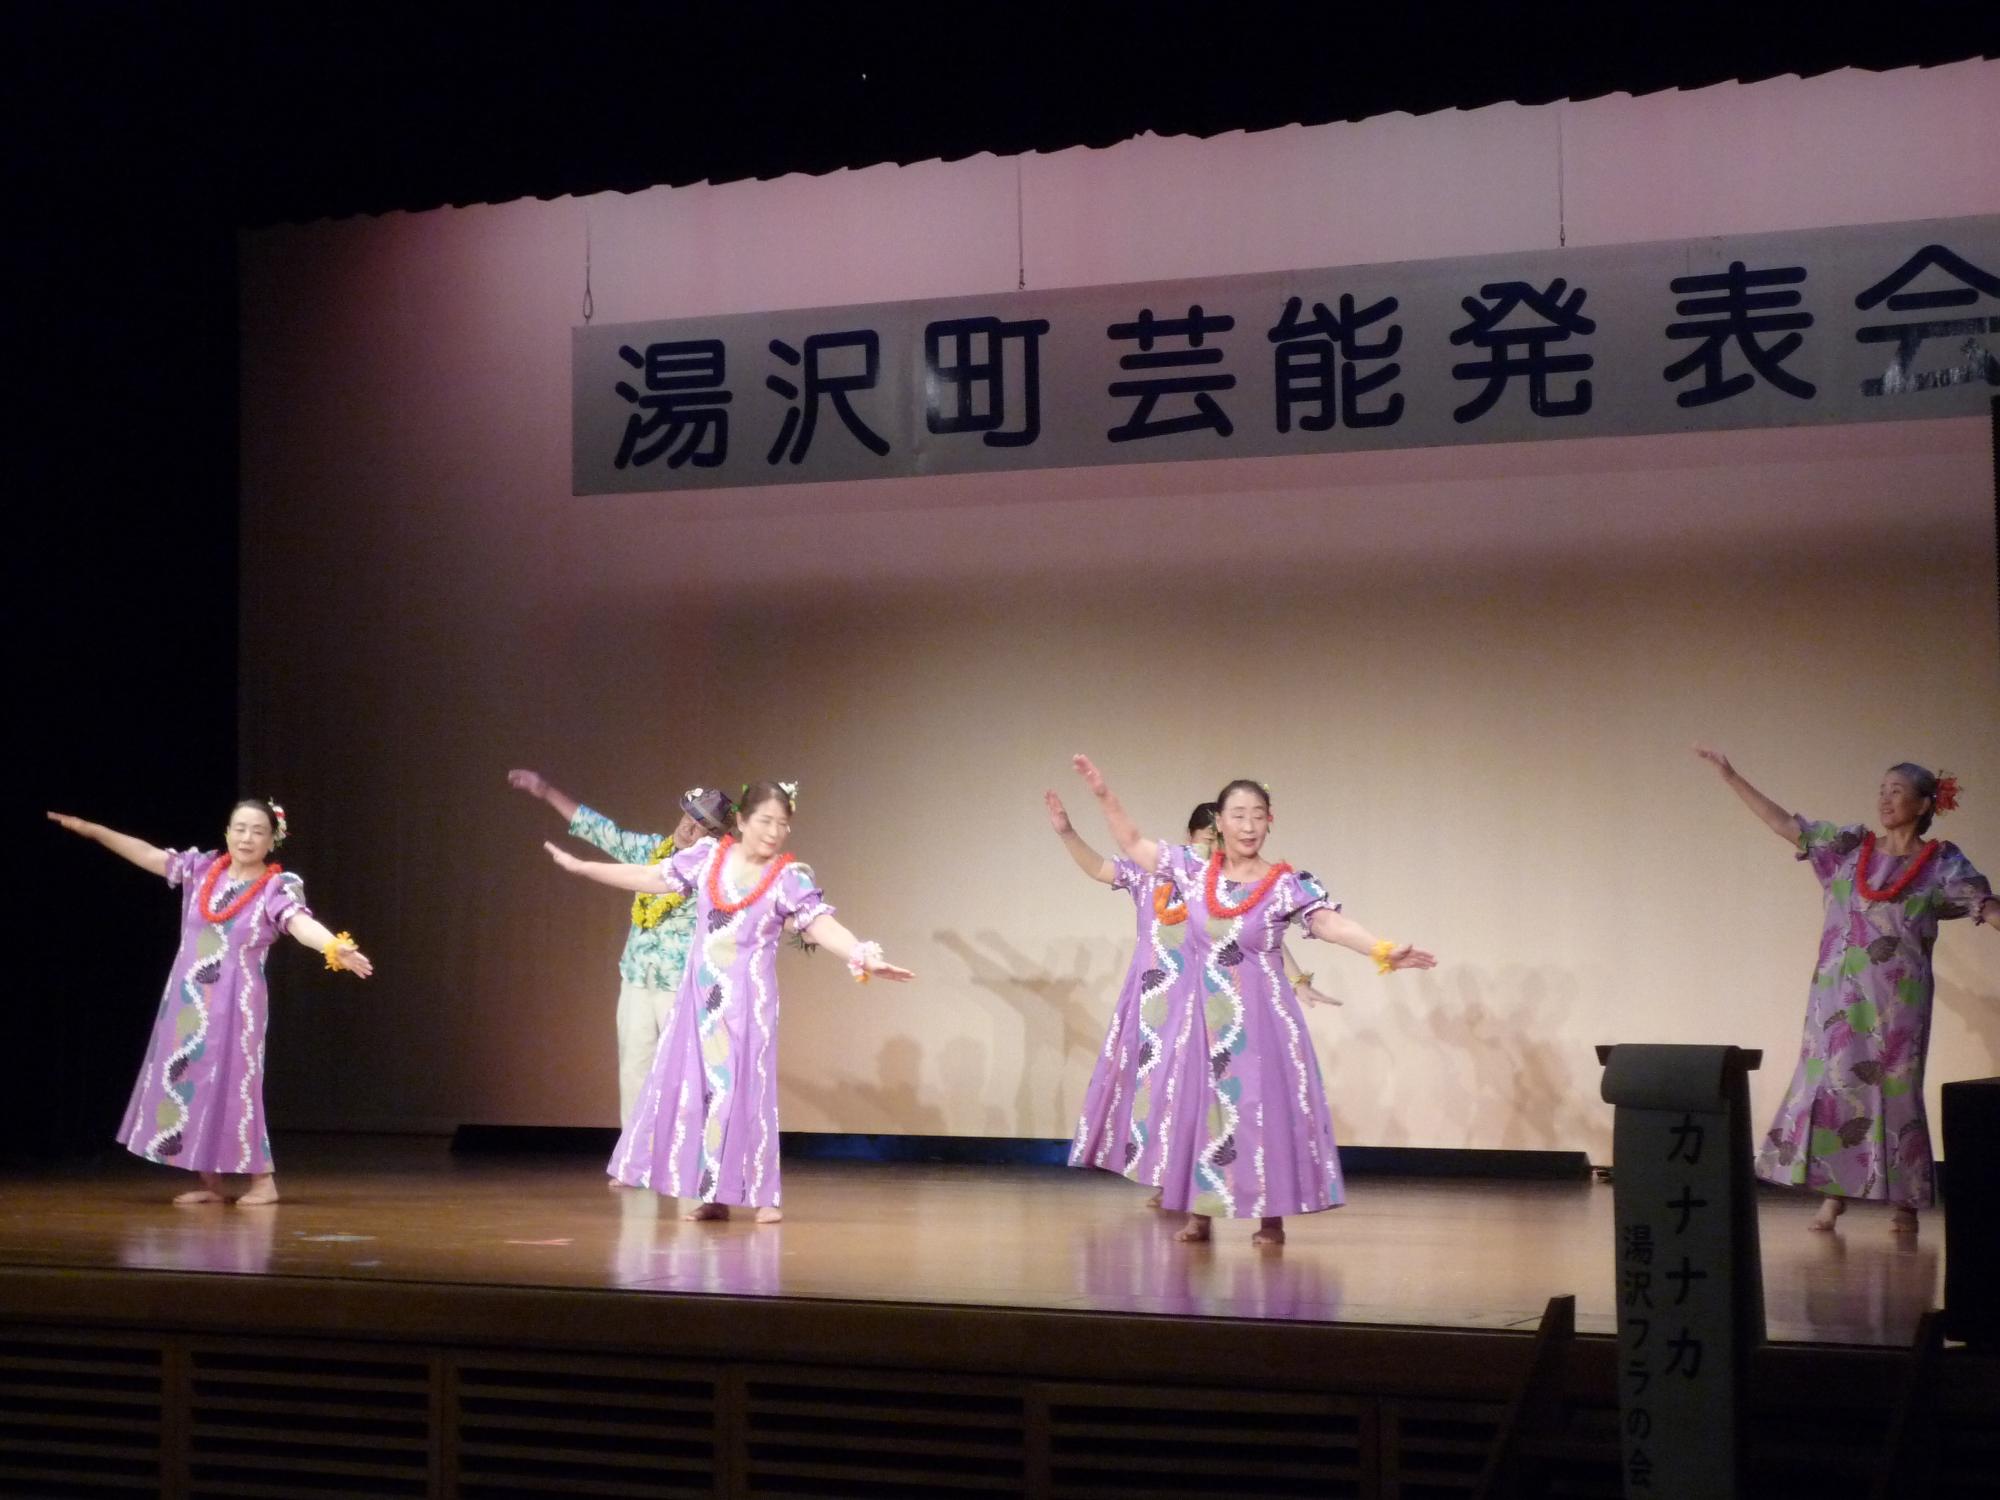 舞台でフラダンスを踊る湯沢フラの会のメンバーの写真